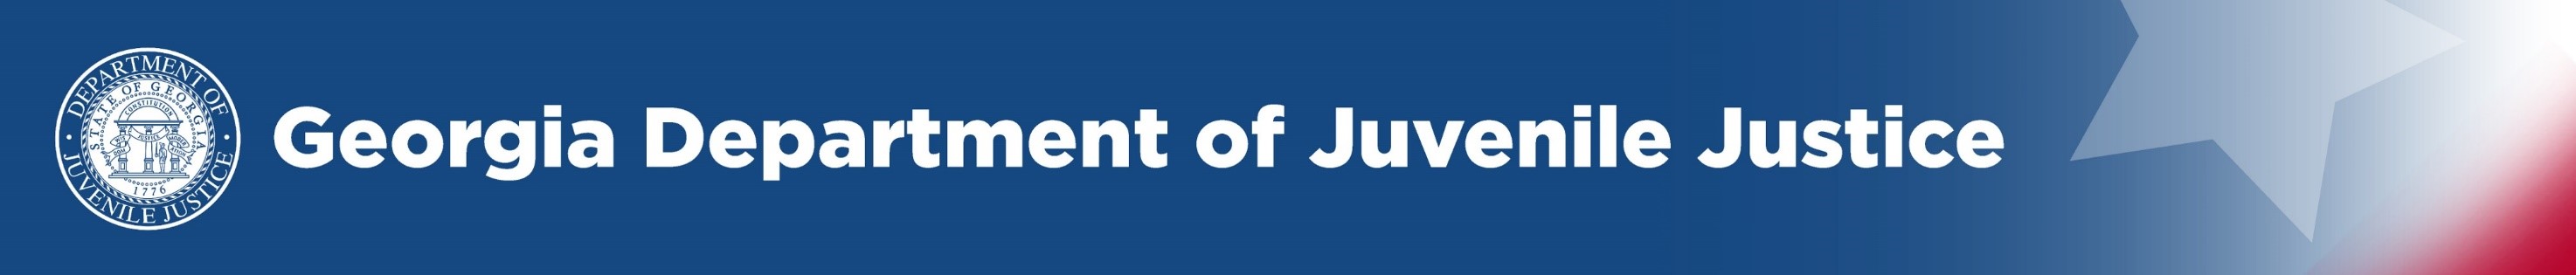 Georgia Department of Juvenile Justice 